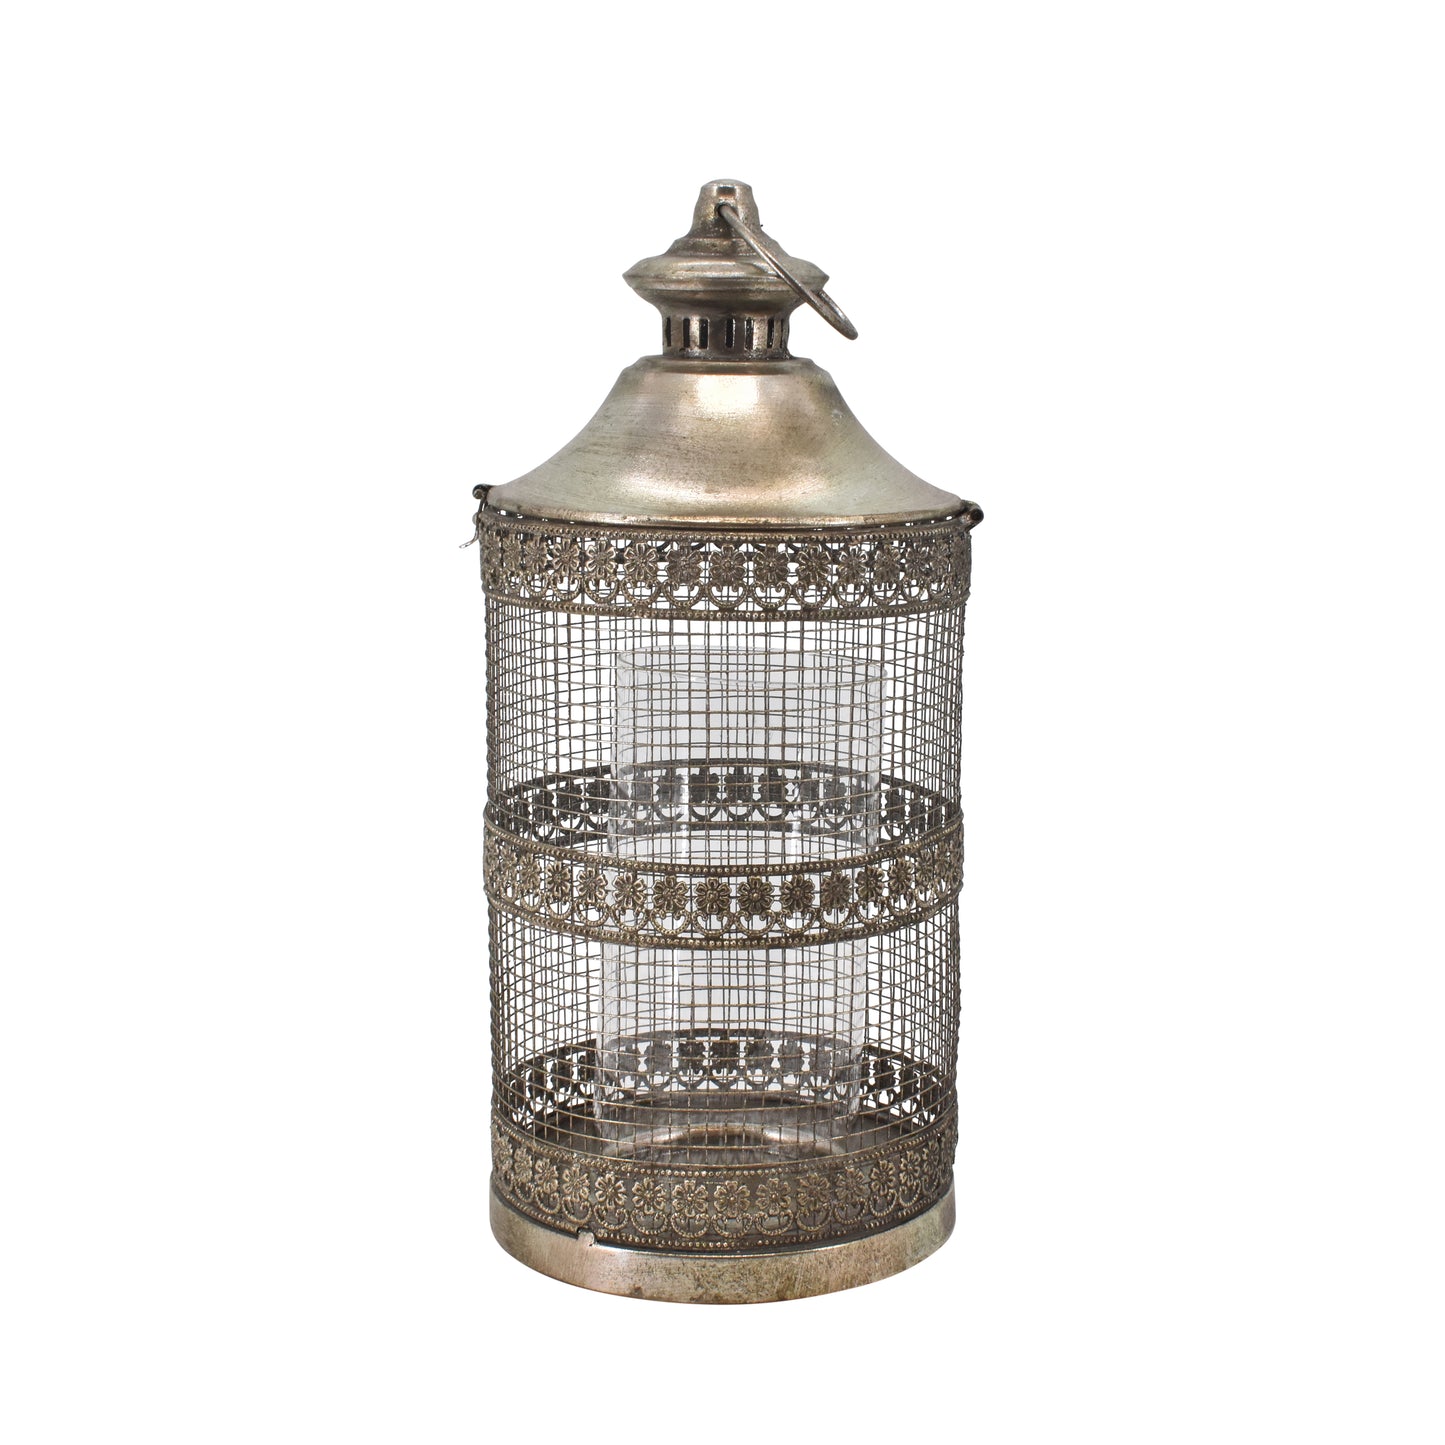 La Vida - Lantern cage, antique silver